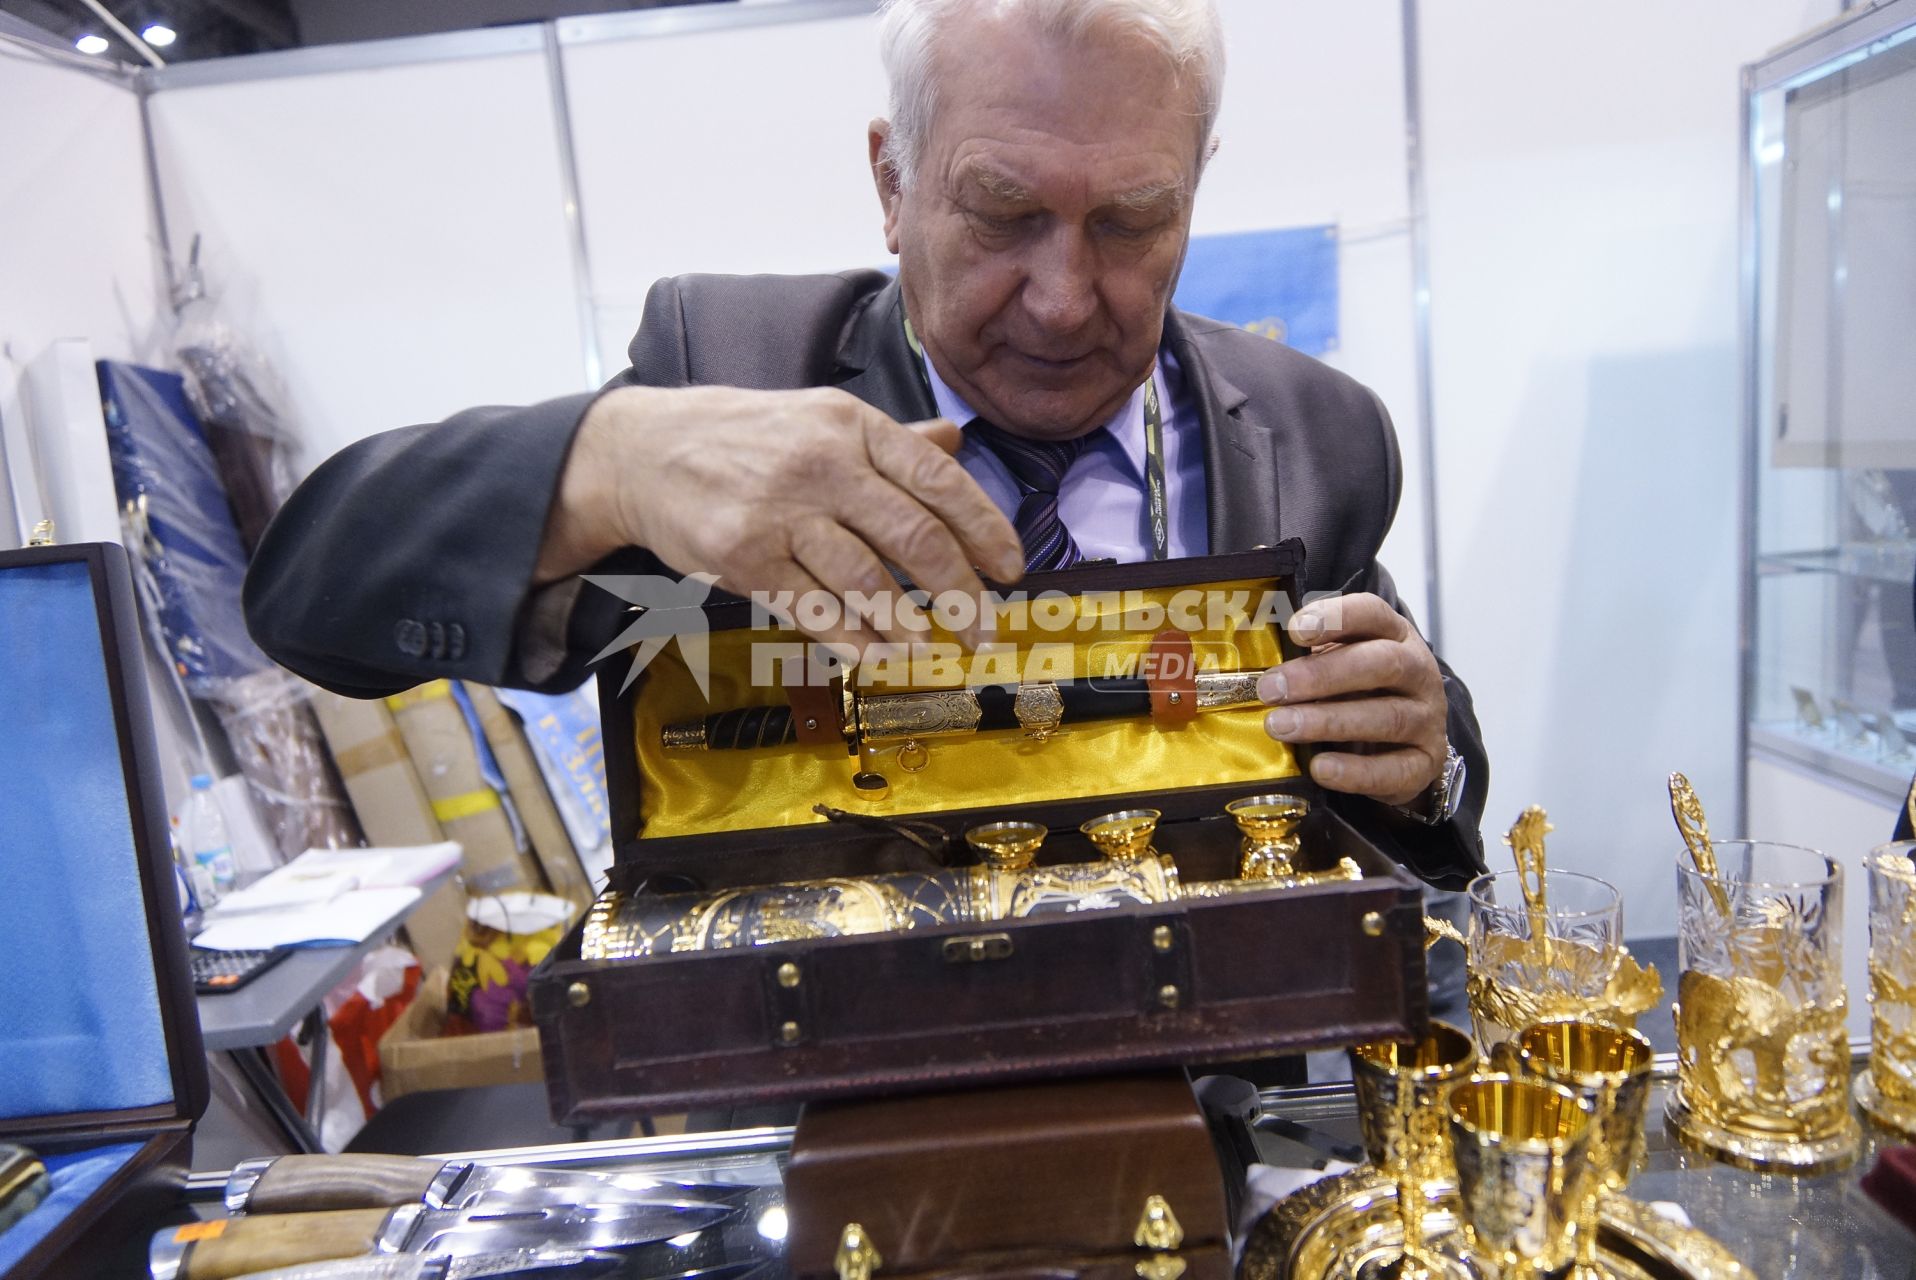 Нижний Тагил. Представитель `Златоустовской оружейной компании` демонстрирует подарочный набор на 10-ой международной выставке вооружений `Russia Arms Expo - 2015`.